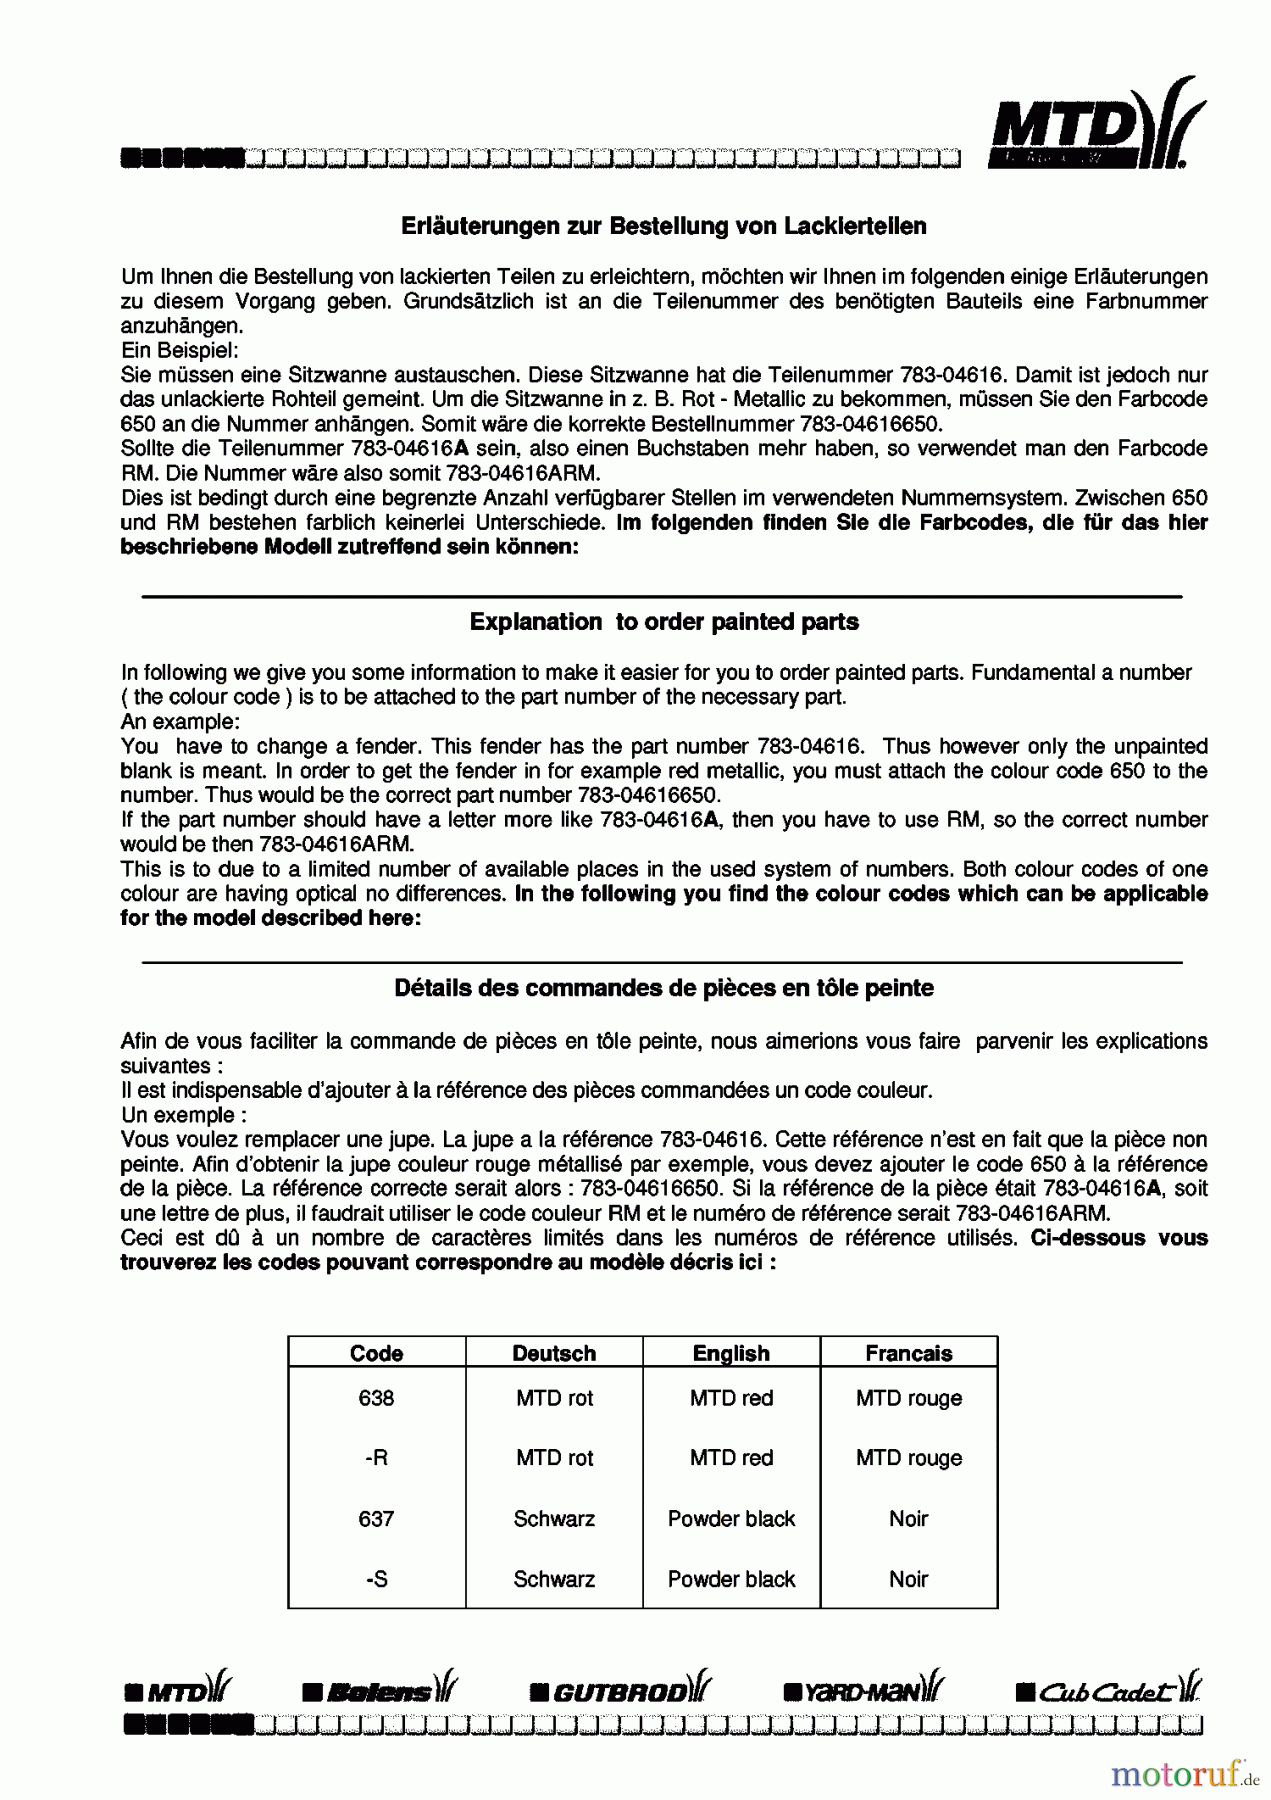  Univert Tracteurs de pelouse UN 125 BC 13BL45GC663  (1998) Information du code de couleur